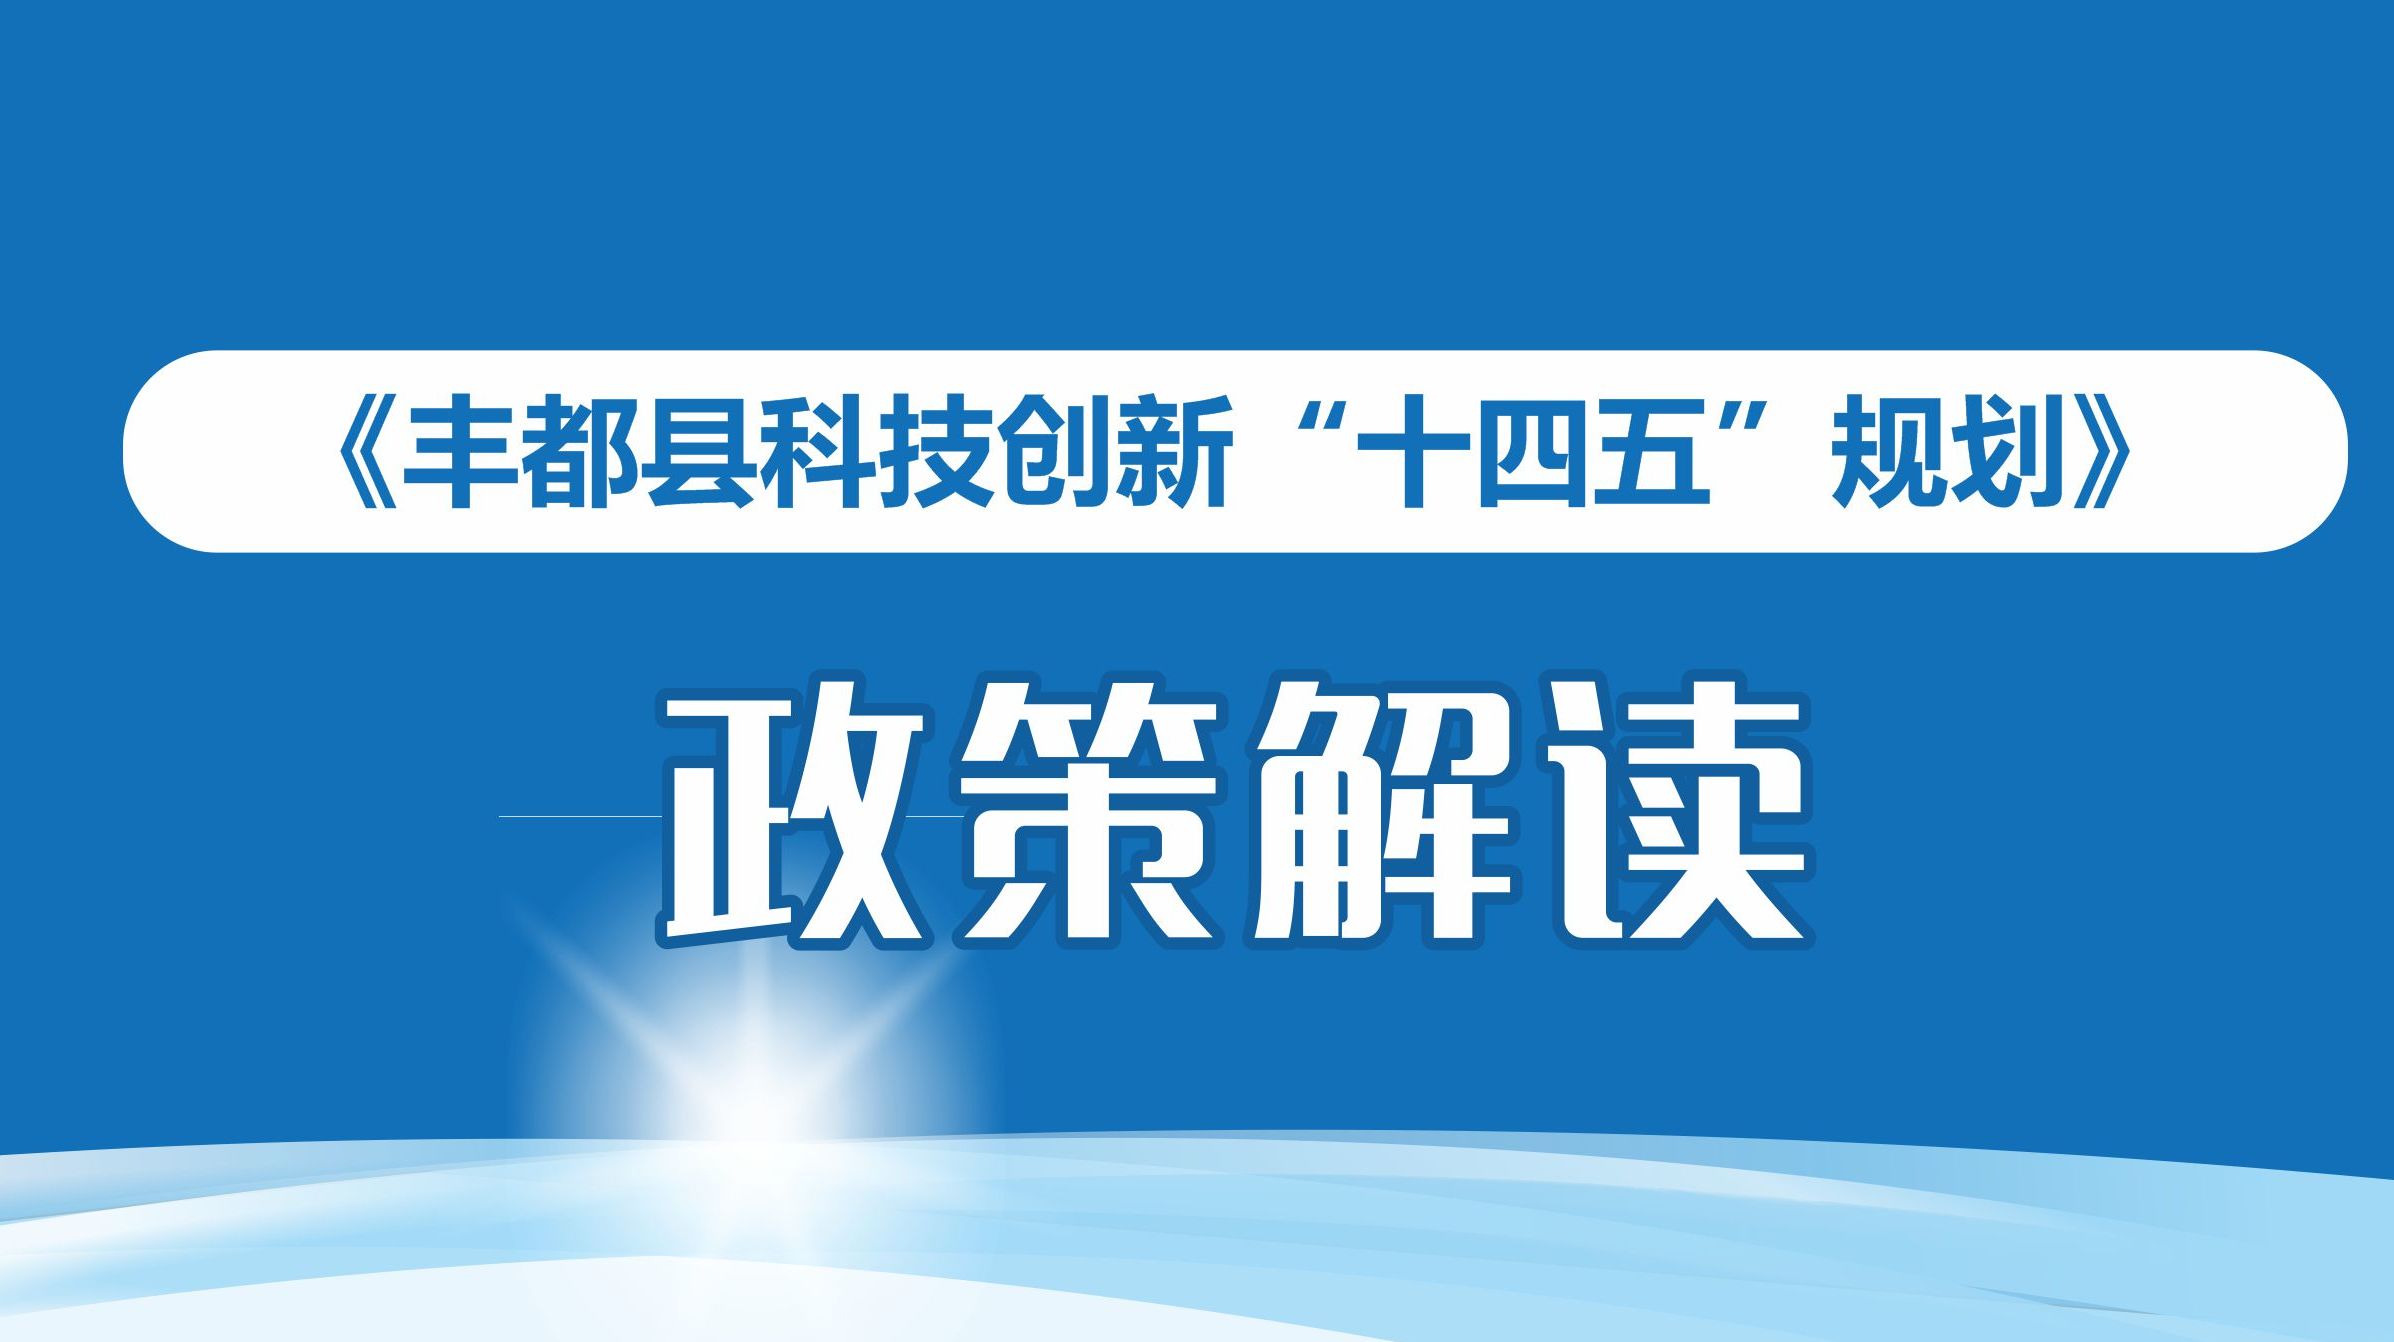 重庆大学与丰都县人民政府对接丰都中学托管帮扶工作 - 综合新闻 - 重庆大学新闻网